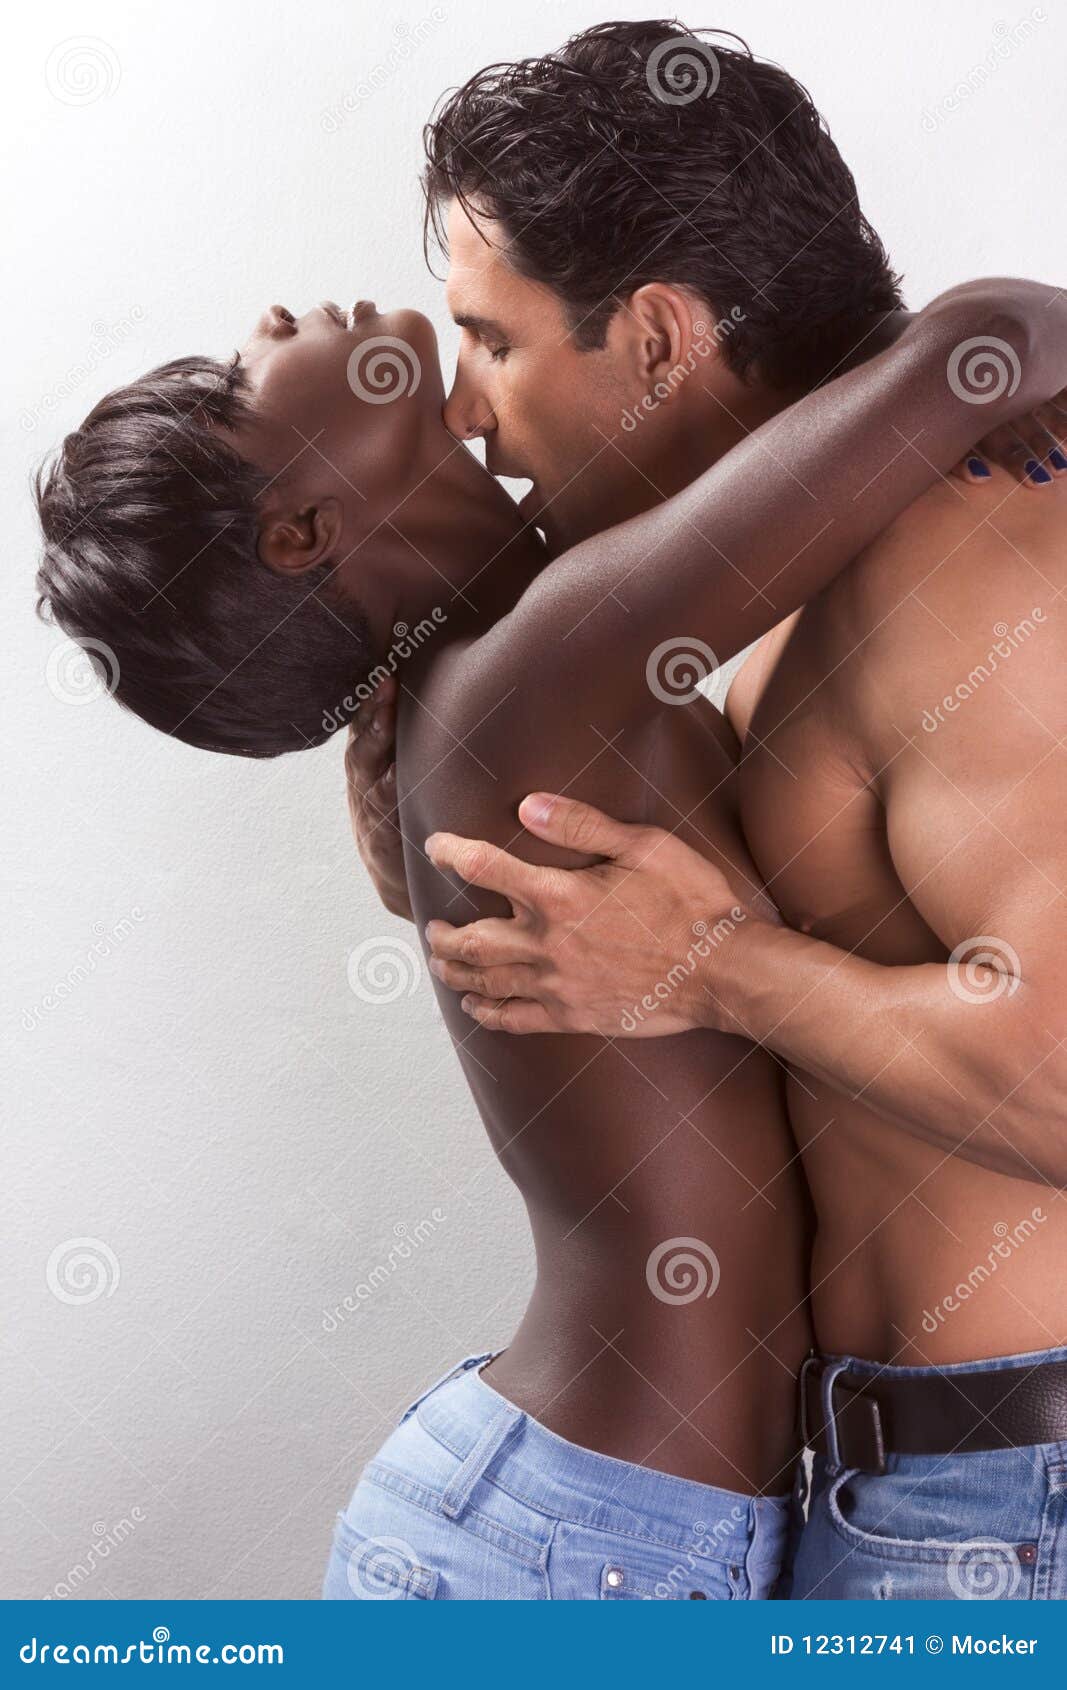 Nude Black Men And Women 104